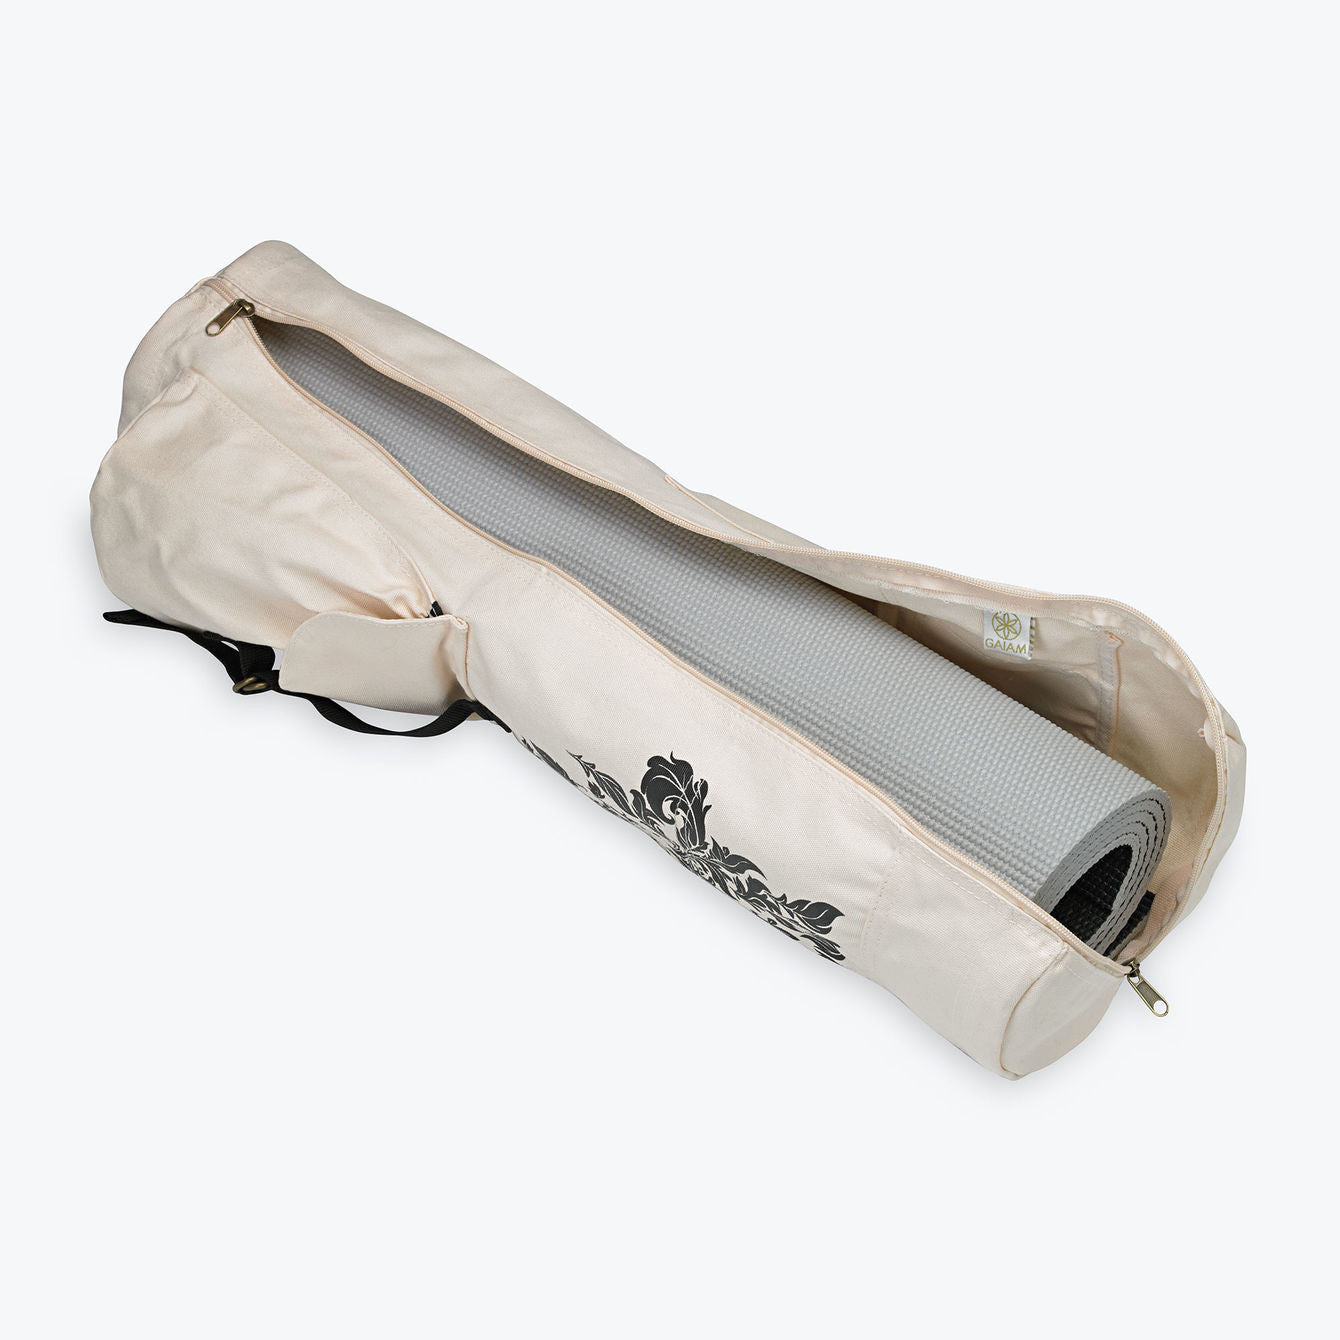 Gaiam Yoga Mat Bags in Yoga 